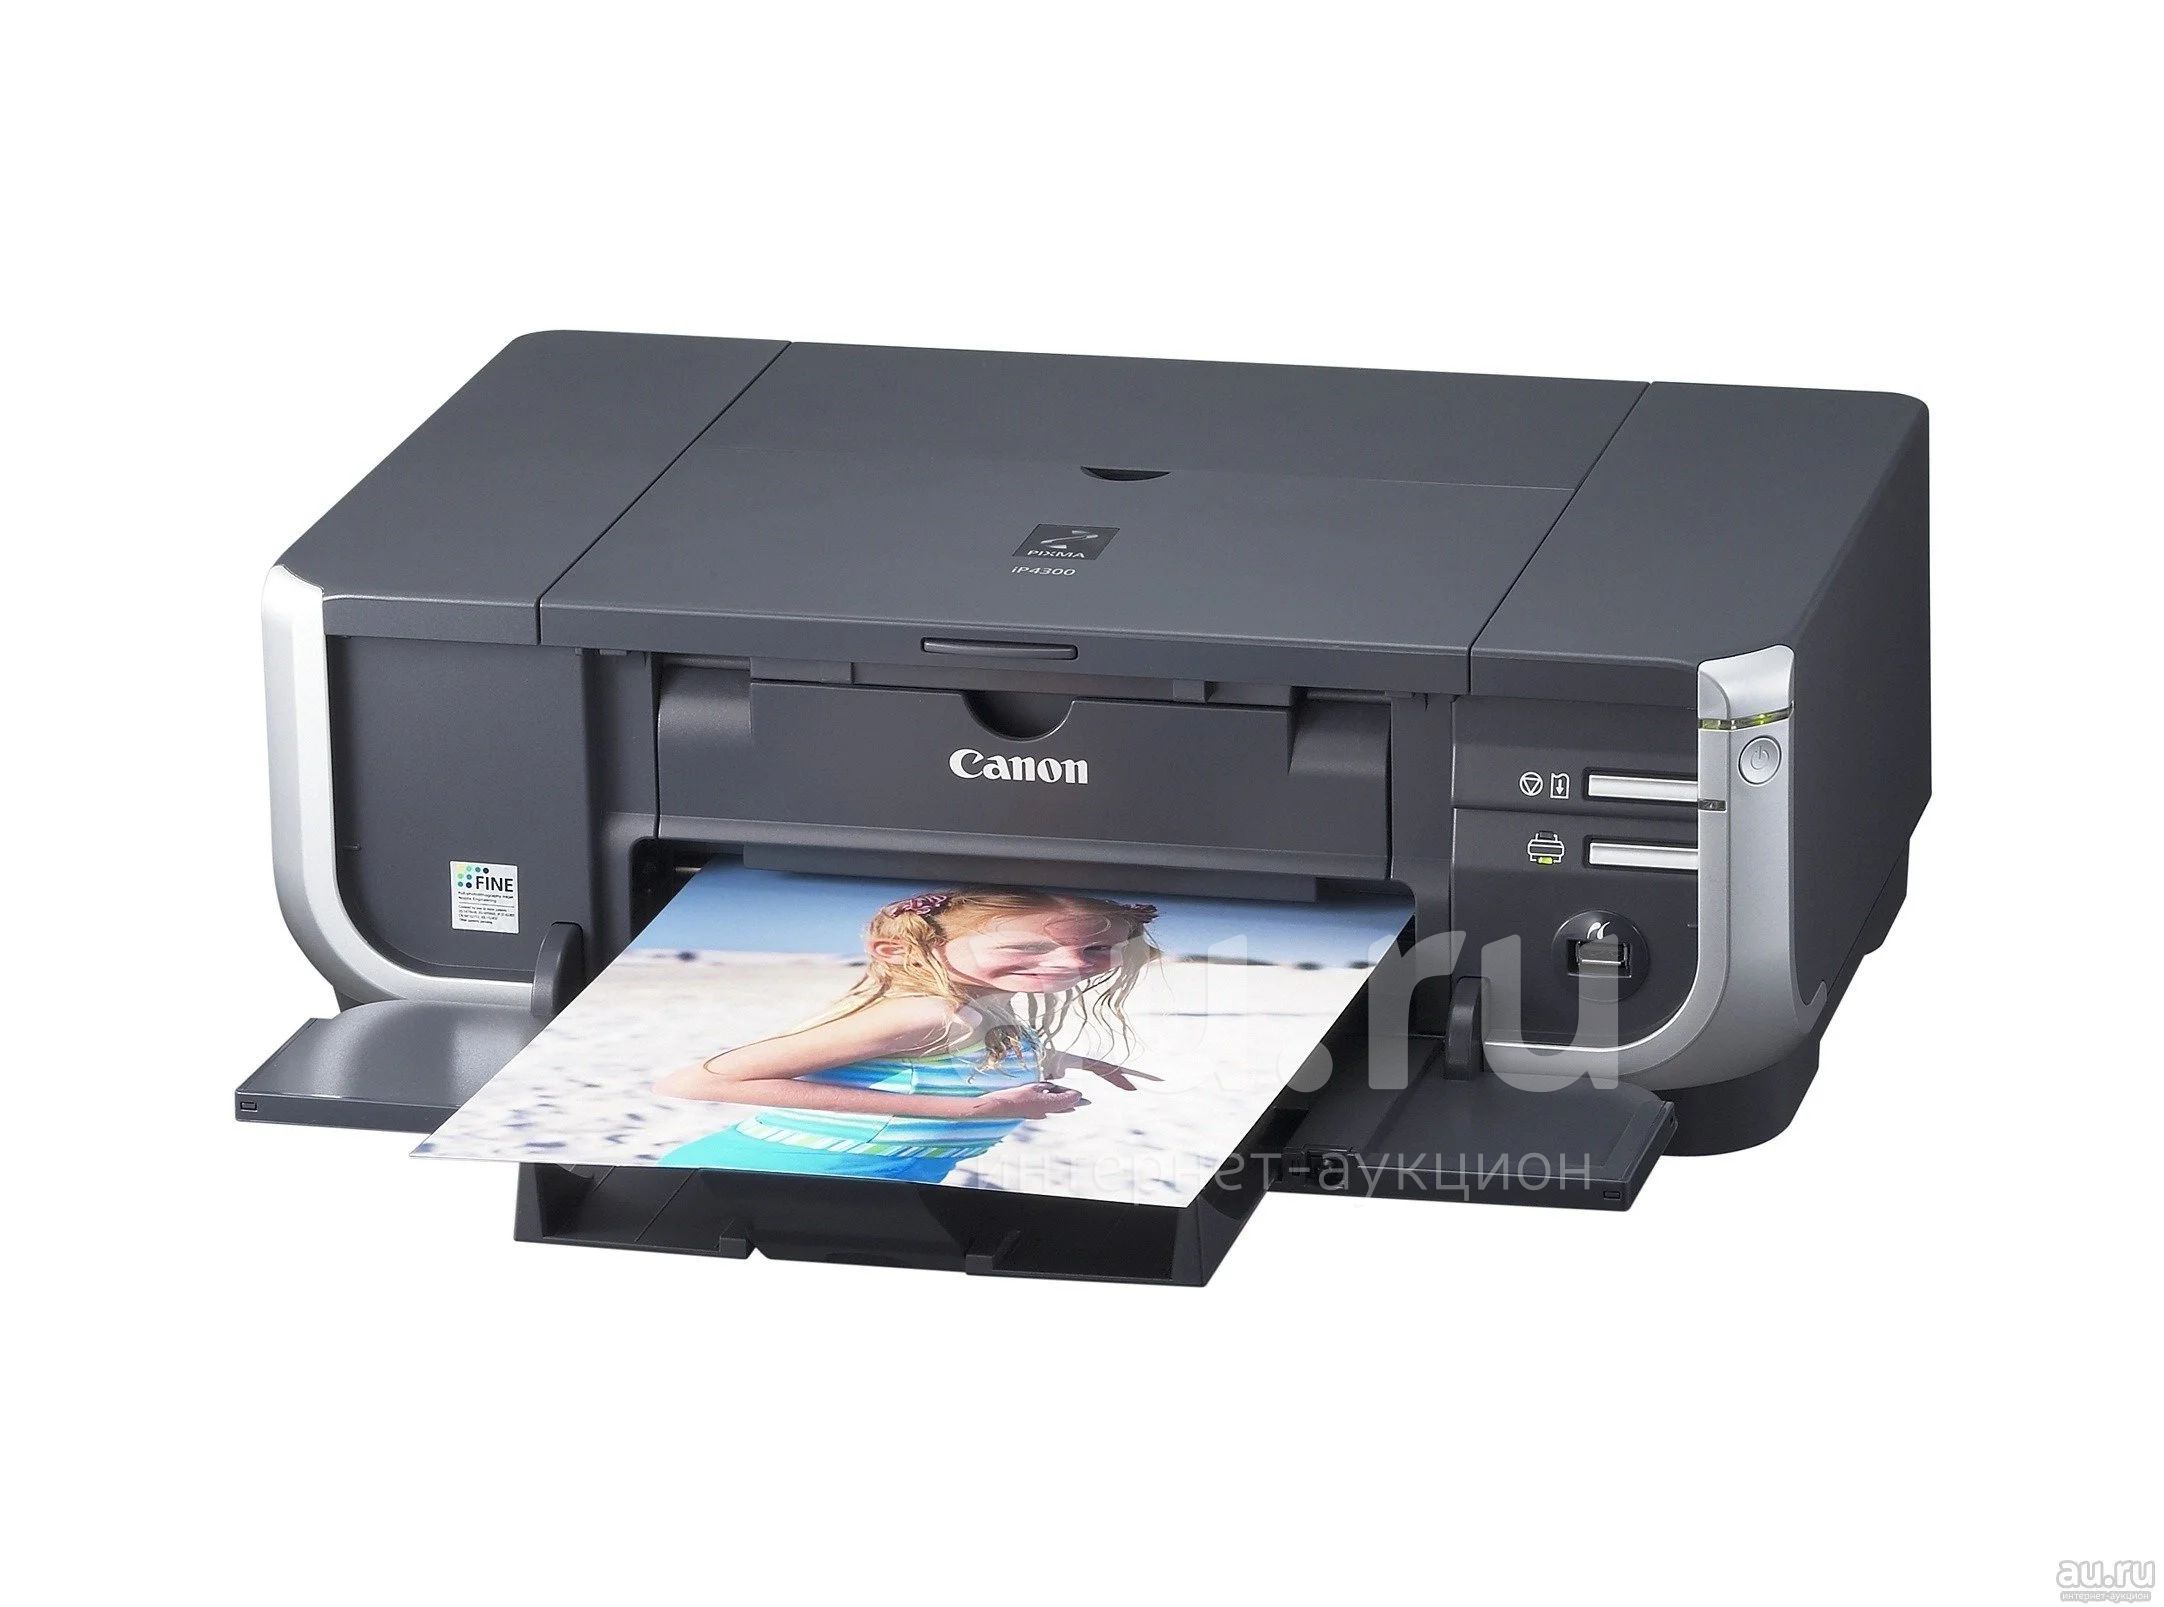 Купить принтер видео. Canon PIXMA ip4300. Canon PIXMA 4300. Струйный принтер Canon PIXMA. Принтер Кэнон пиксма.